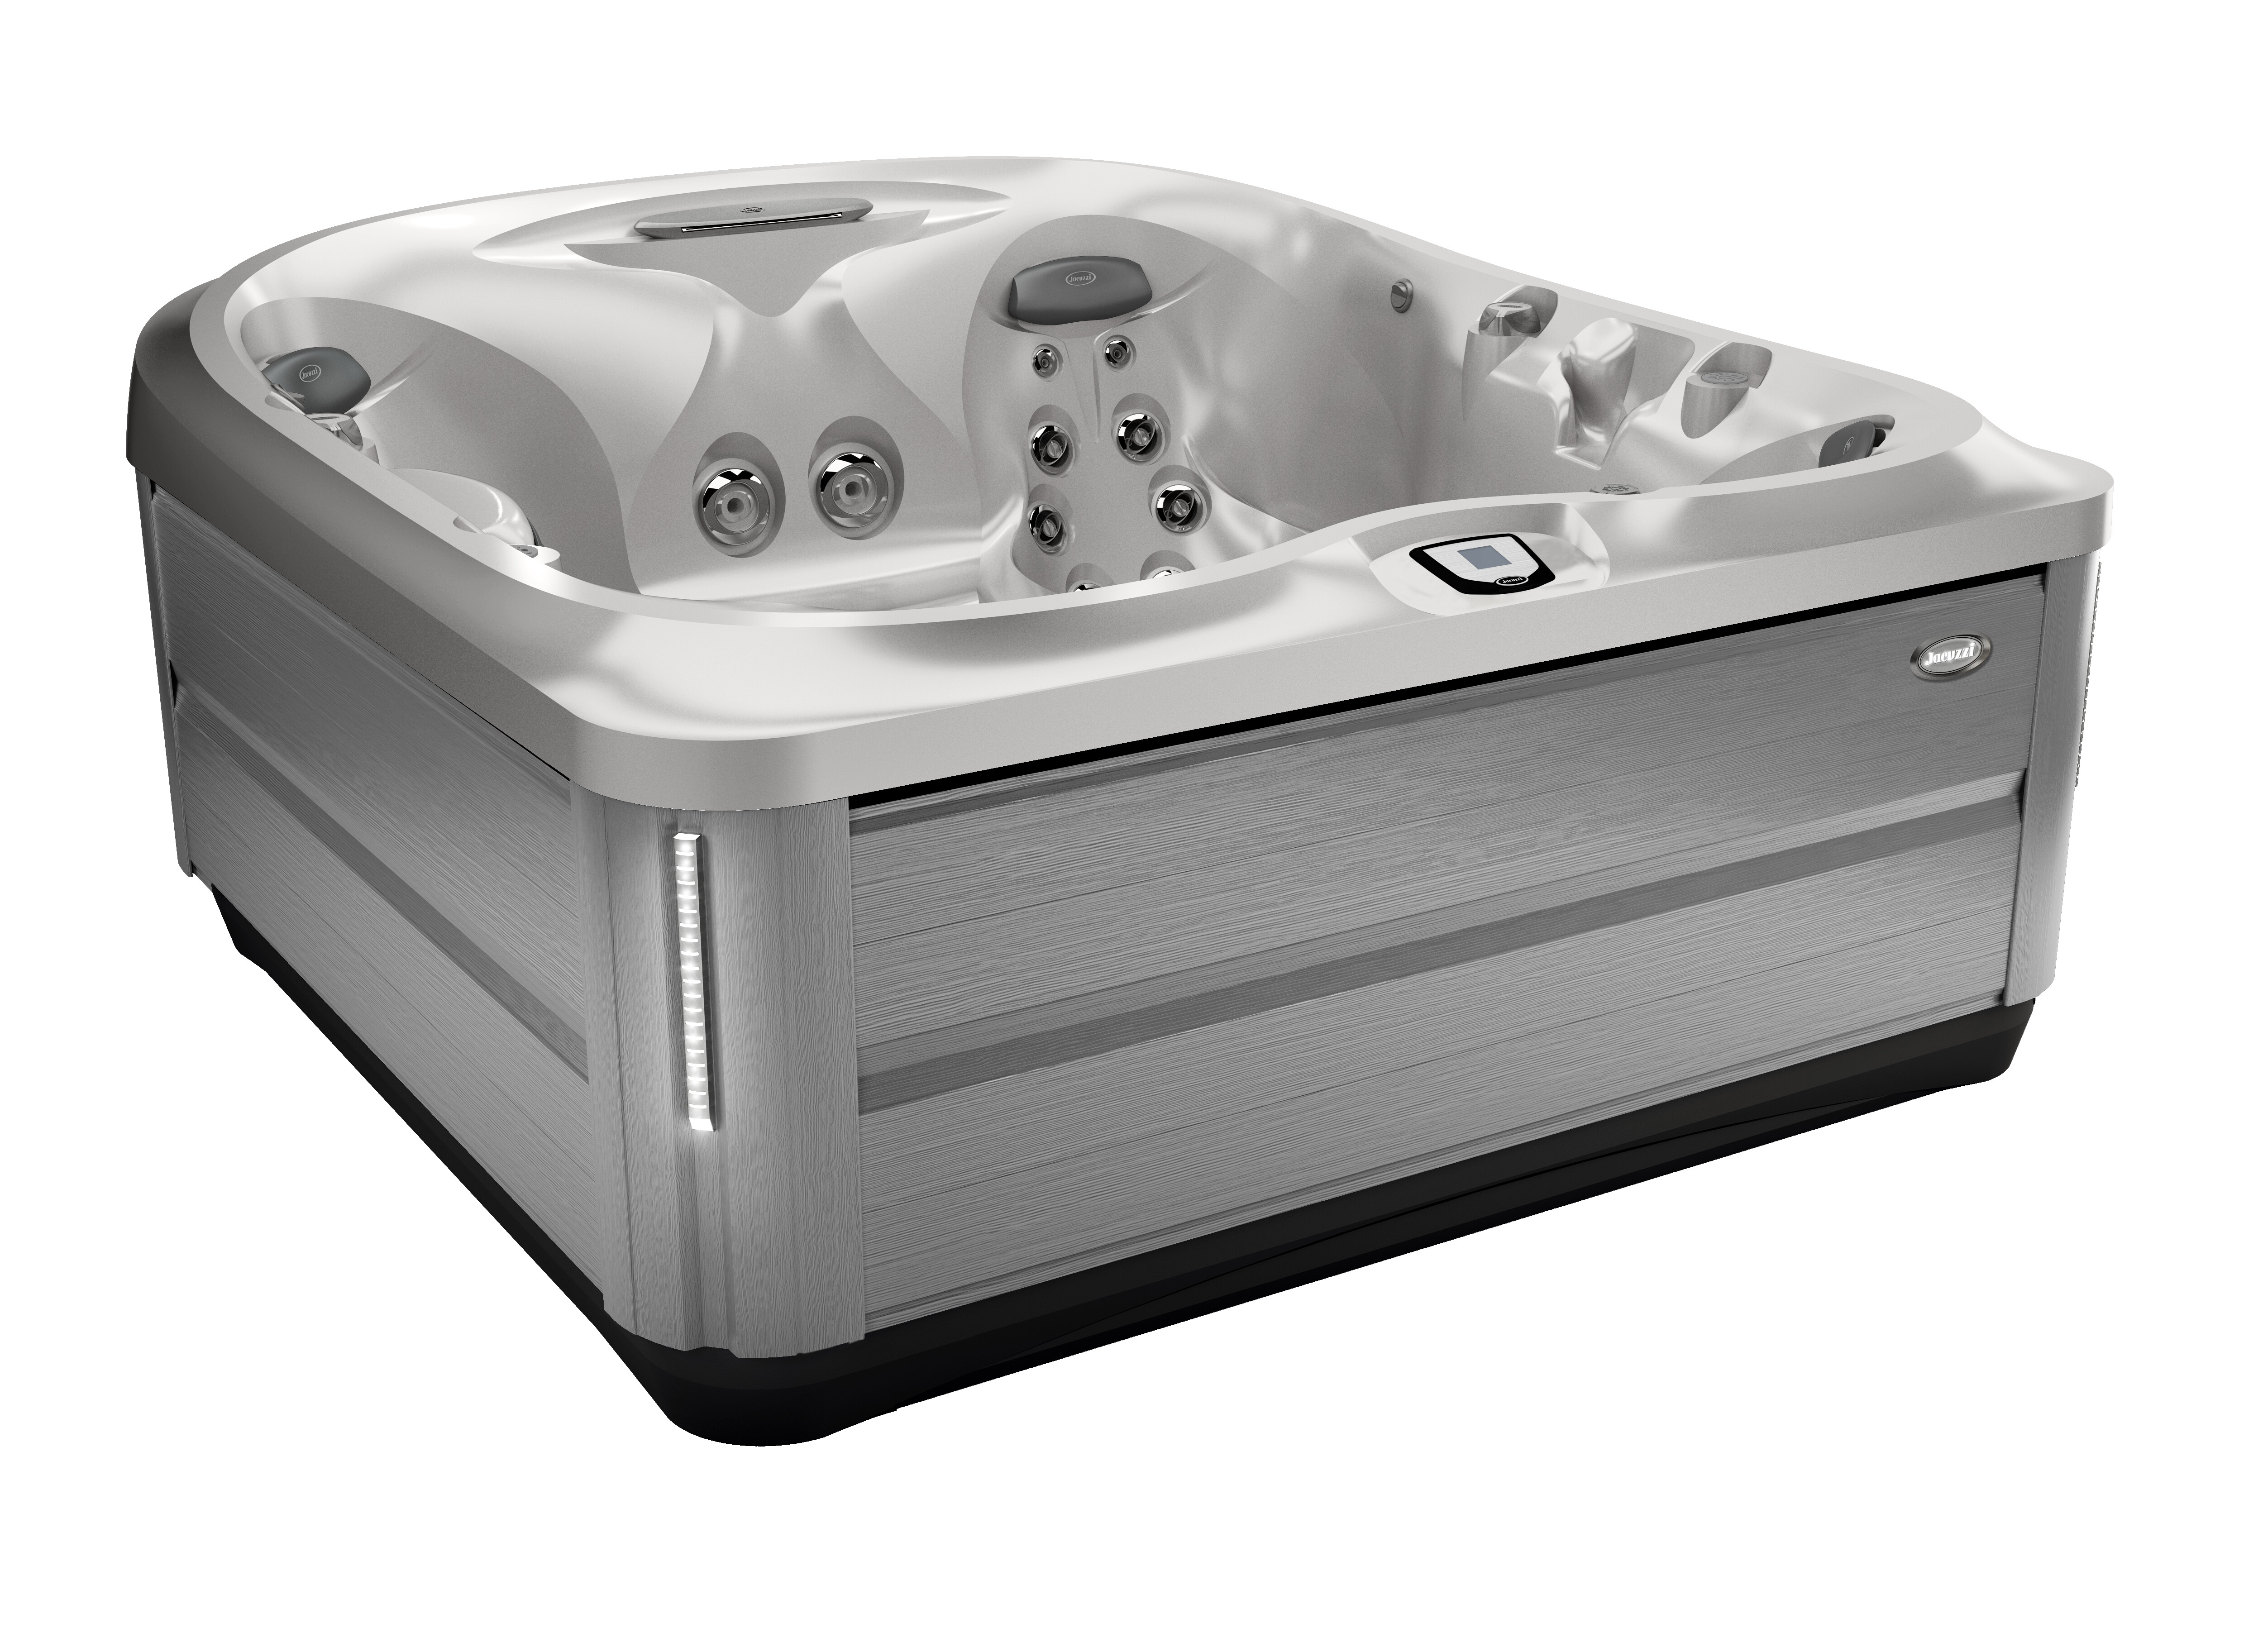 Jacuzzi J-475™ large designer hot tub with lounge seat